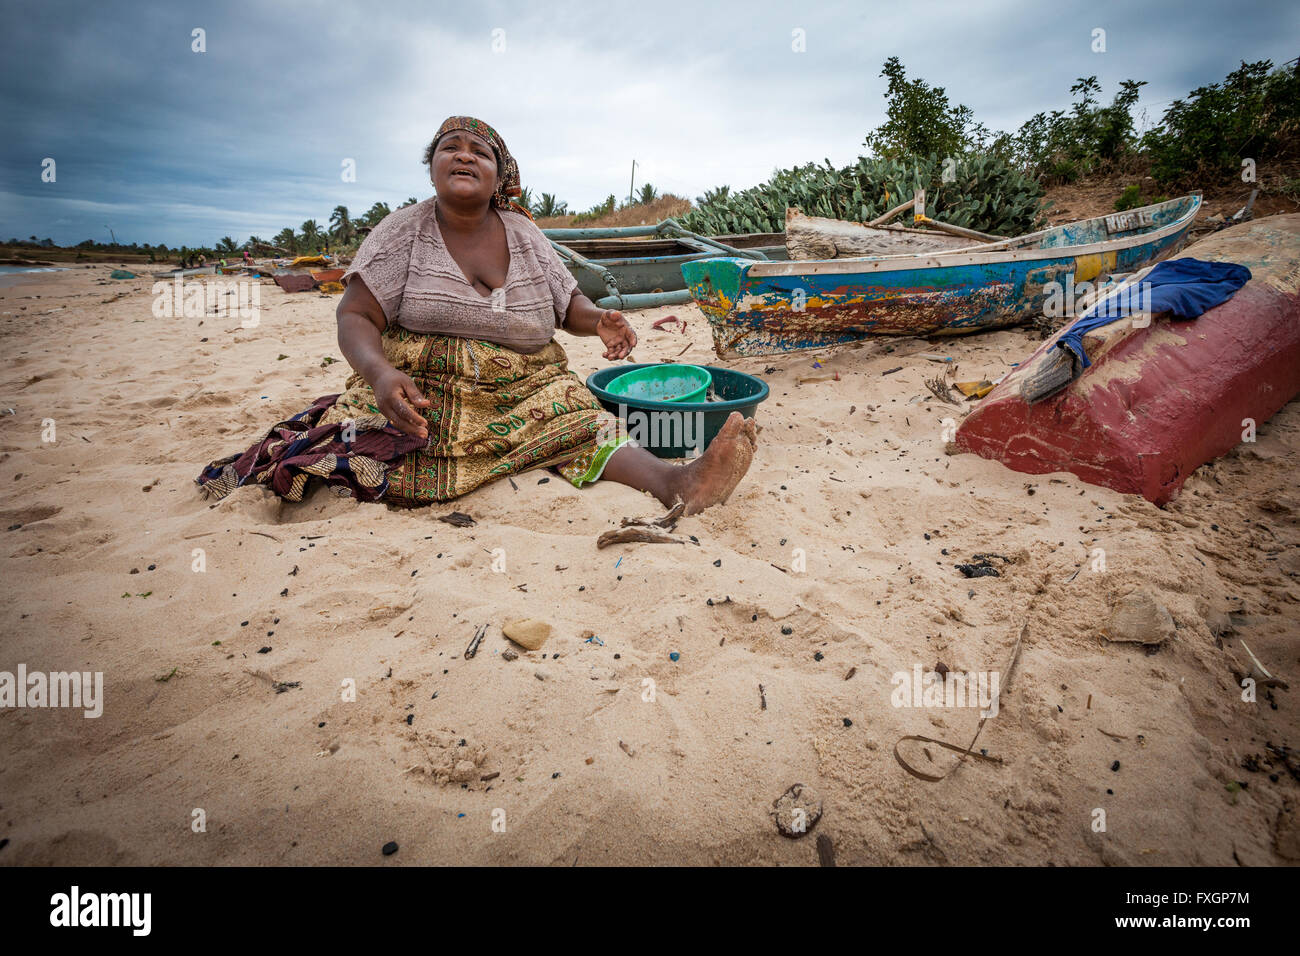 Le Mozambique, l'Afrique, une femme sur la plage est la cuisson, sable blanc, ciel nuageux. Banque D'Images